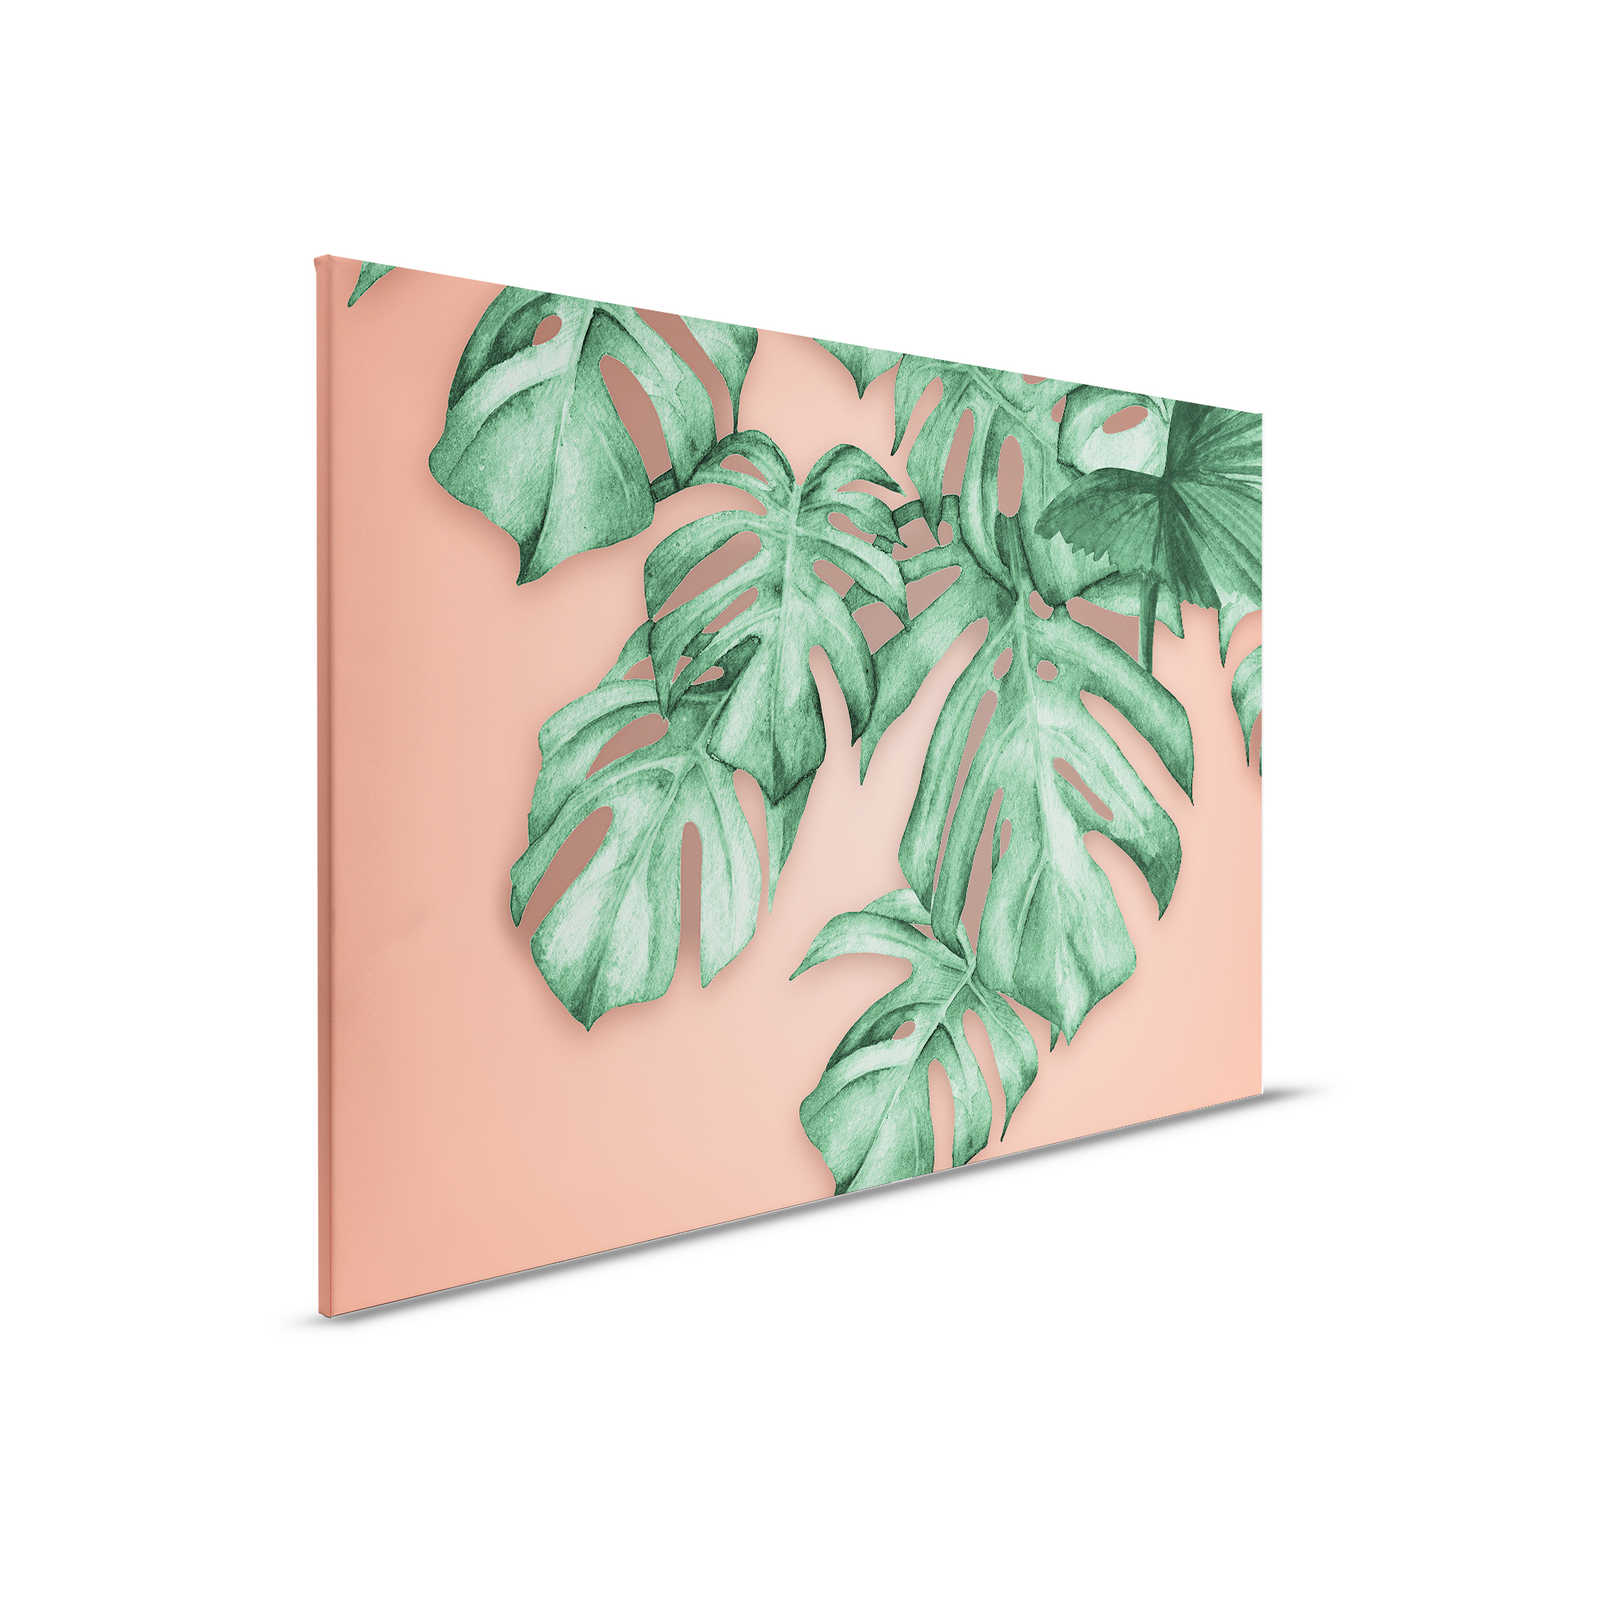 Toile avec feuilles de palmier tropicales - 0,90 m x 0,60 m
